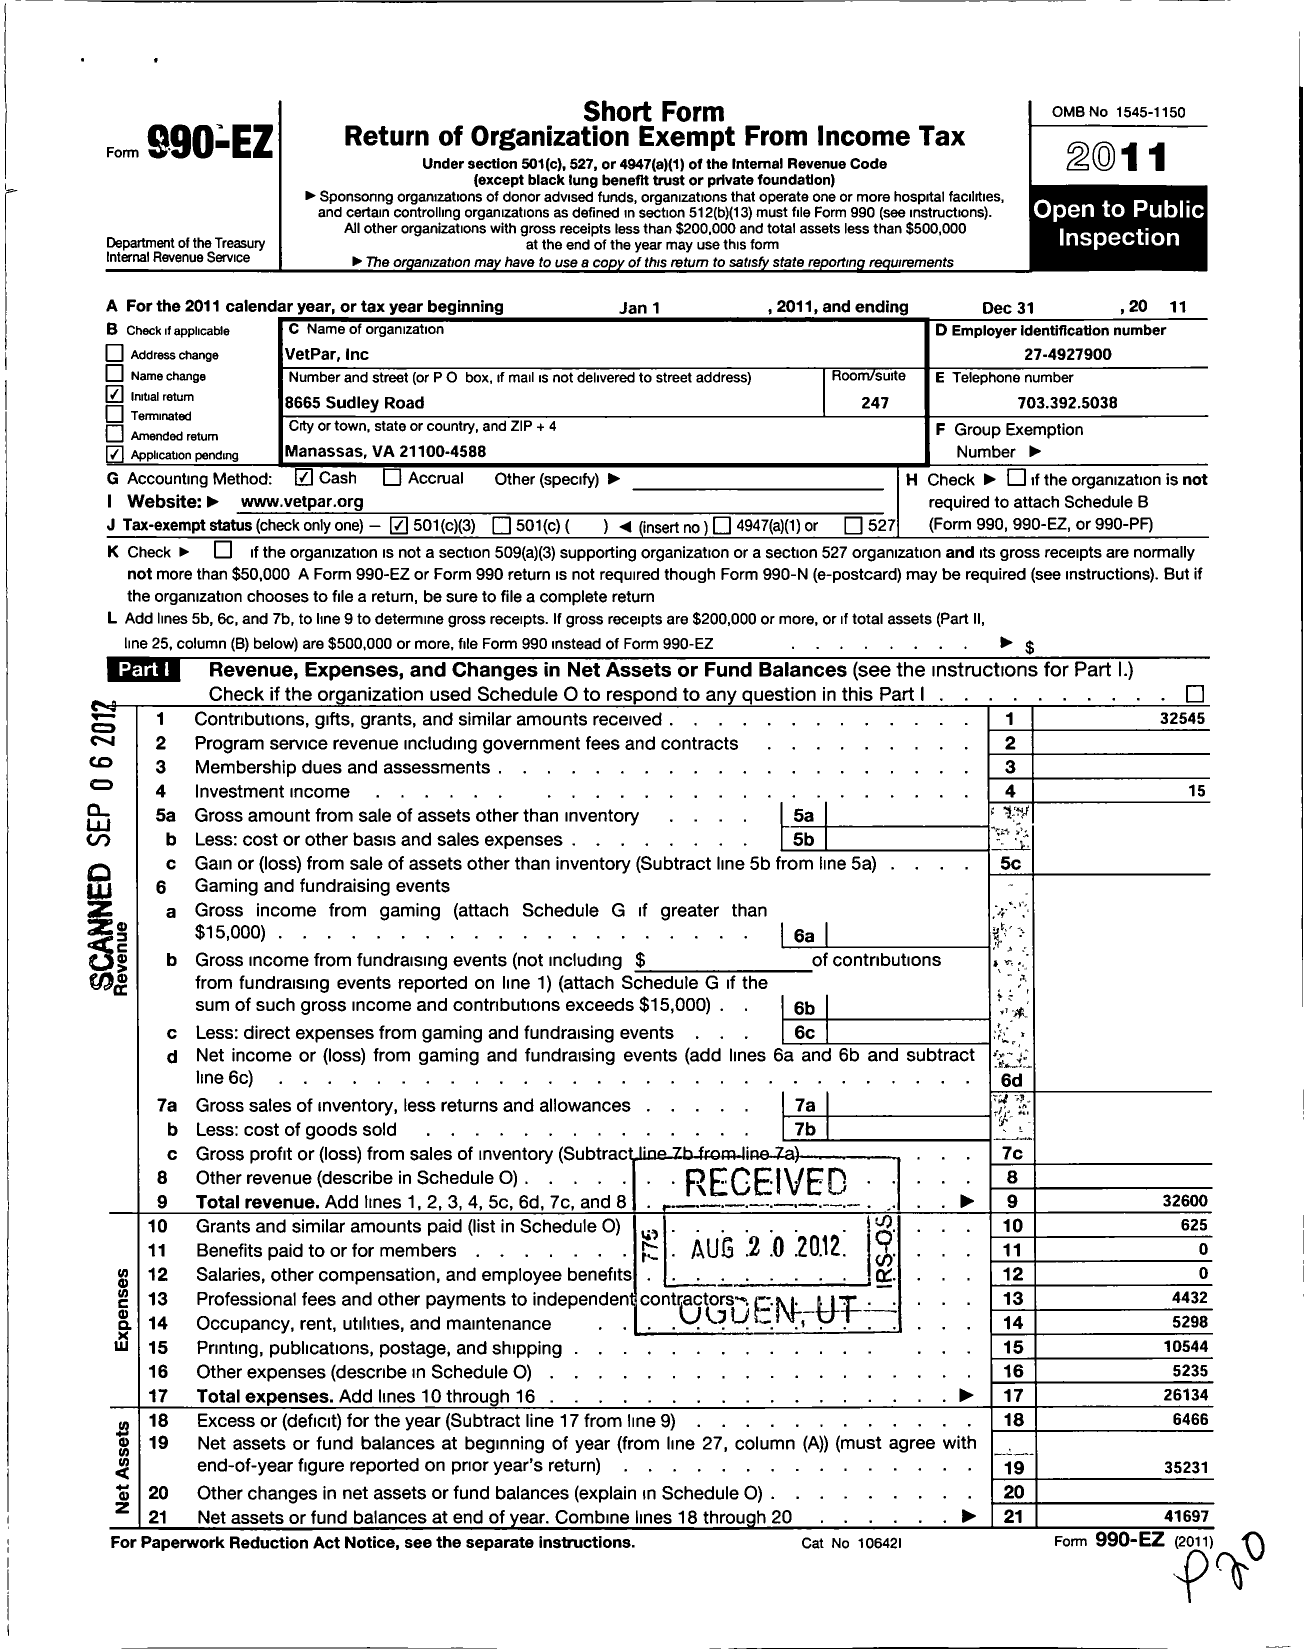 Image of first page of 2011 Form 990EZ for Vetpar